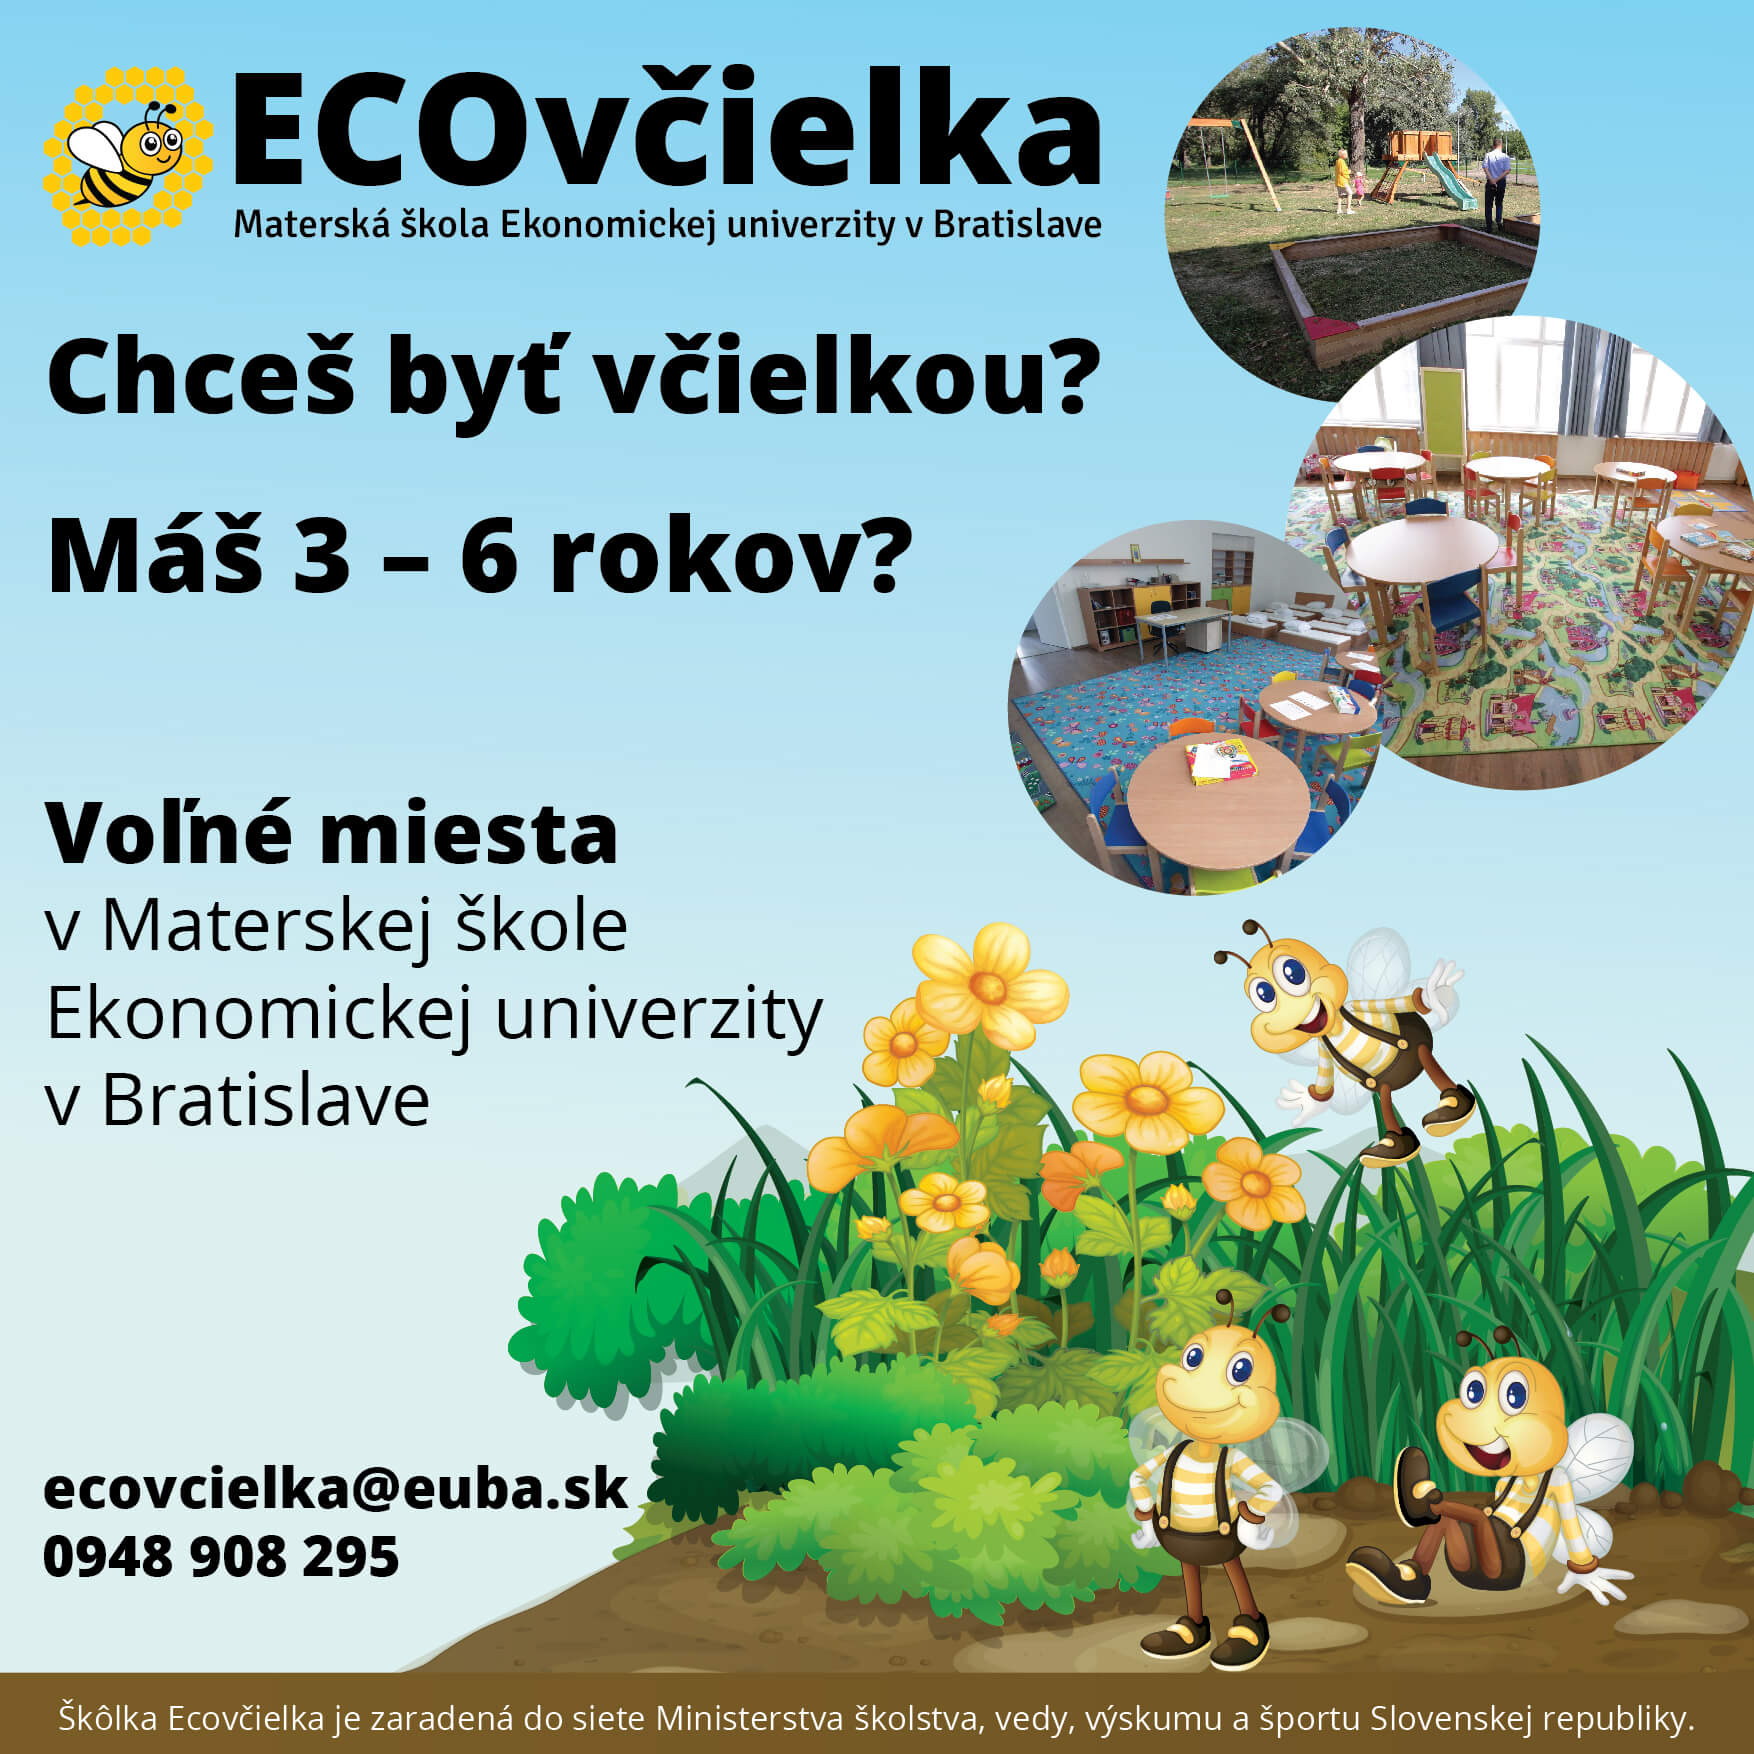 Materská škola Ekonomickej univerzity v Bratislave Ecovčielka